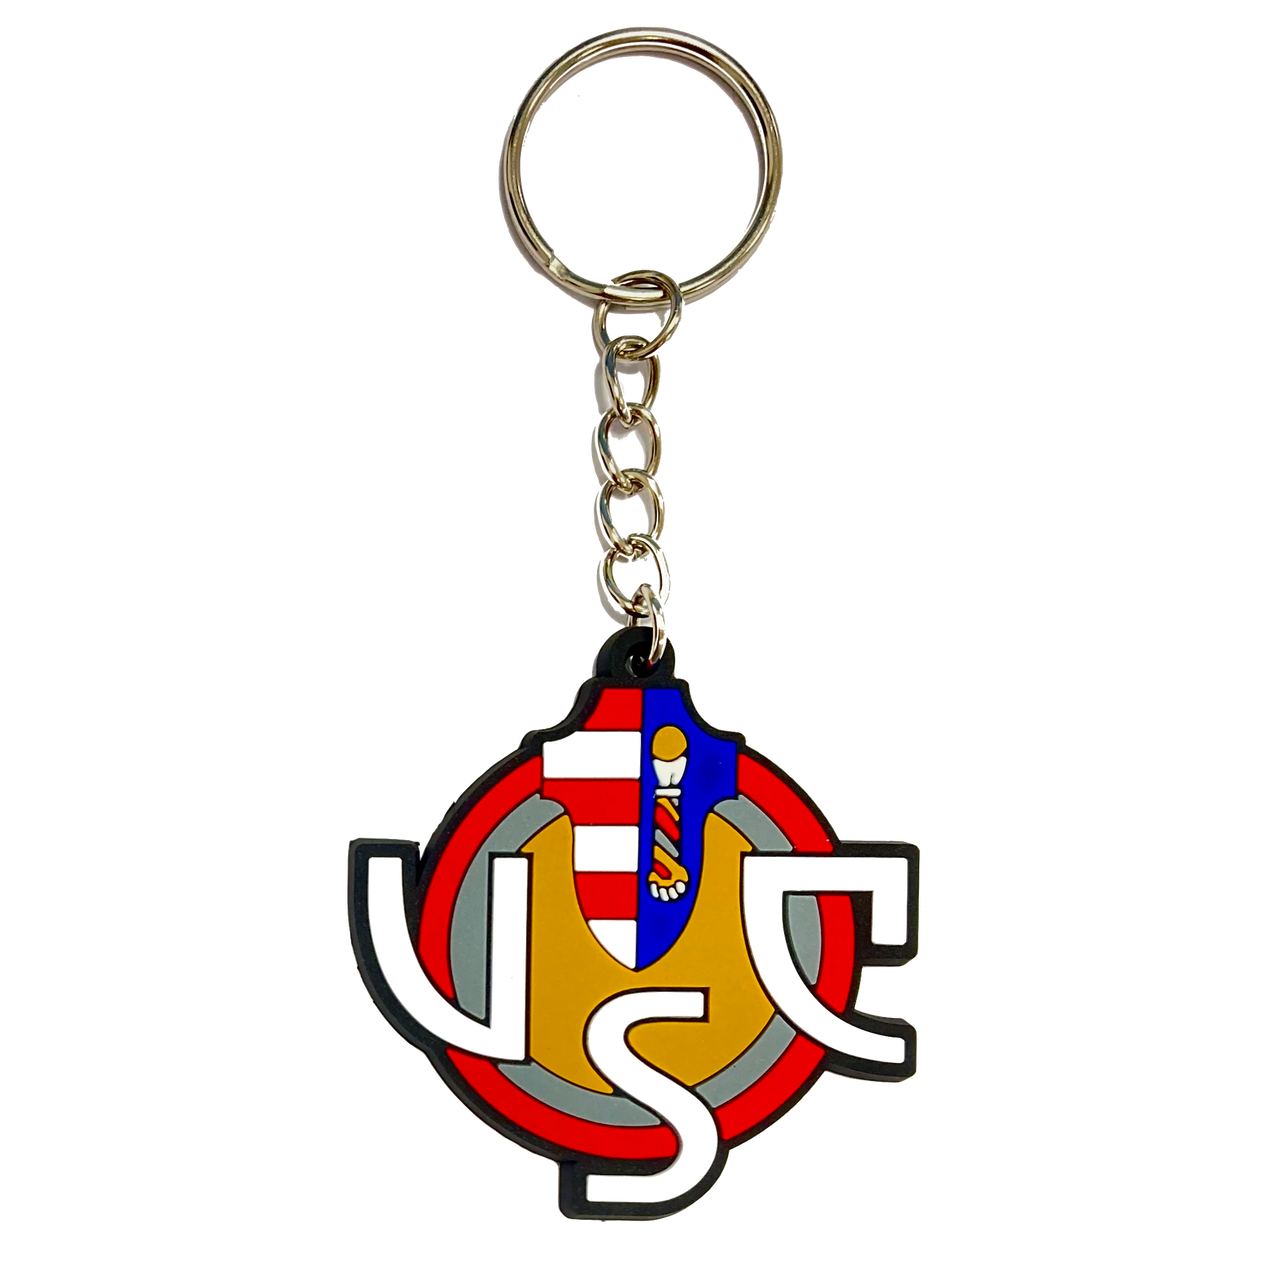 US CREMONESE rubberized key holder with logo